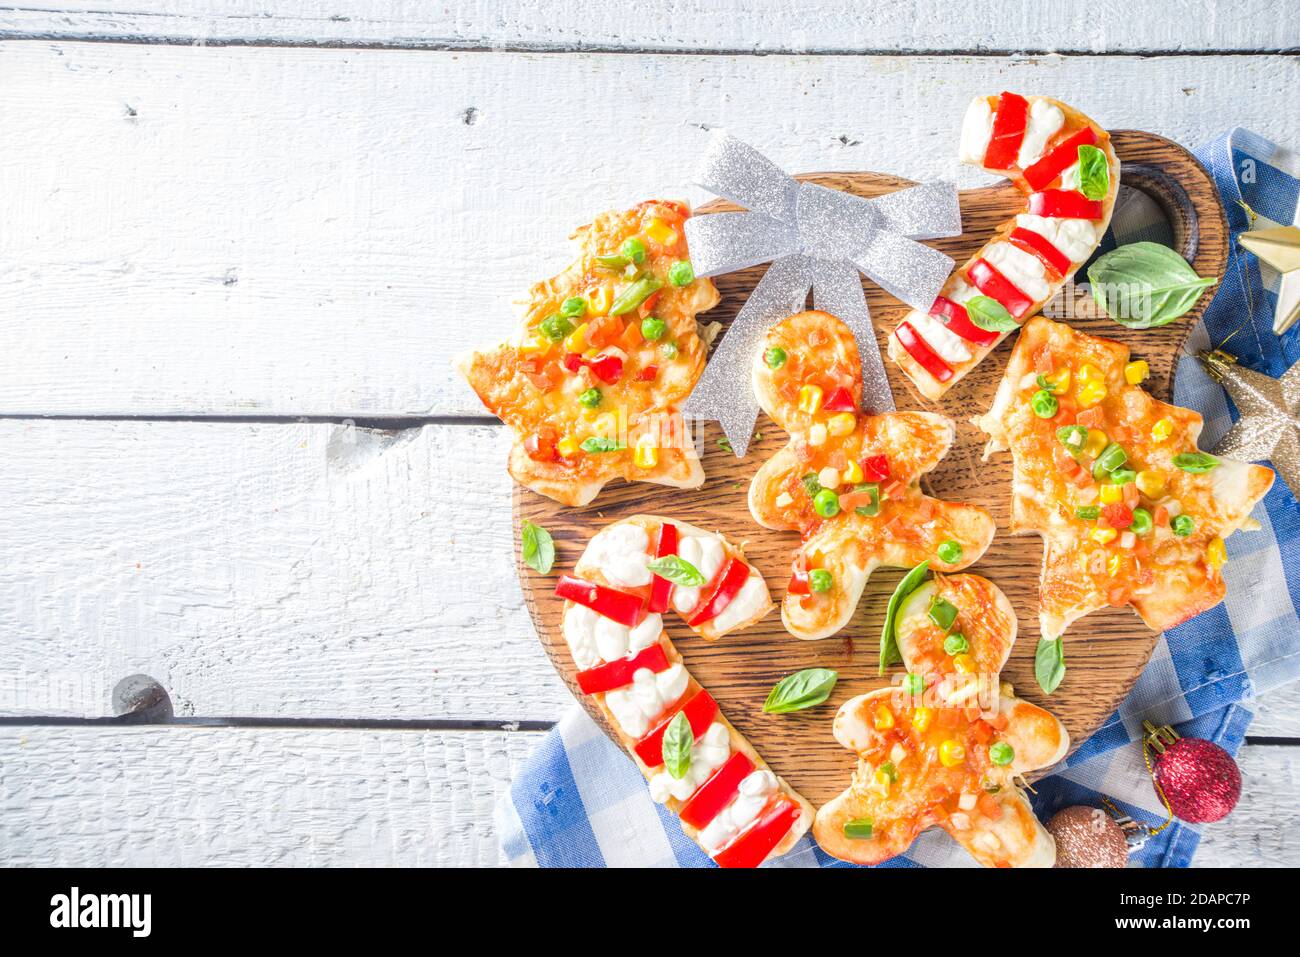 Pizza de Noël pour le dîner d'enfant, faite avec des emporte-pièces, sous forme de symboles traditionnels de Noël - Candy Cane, Gingerbread homme, arbre de Noël, drôle f Banque D'Images